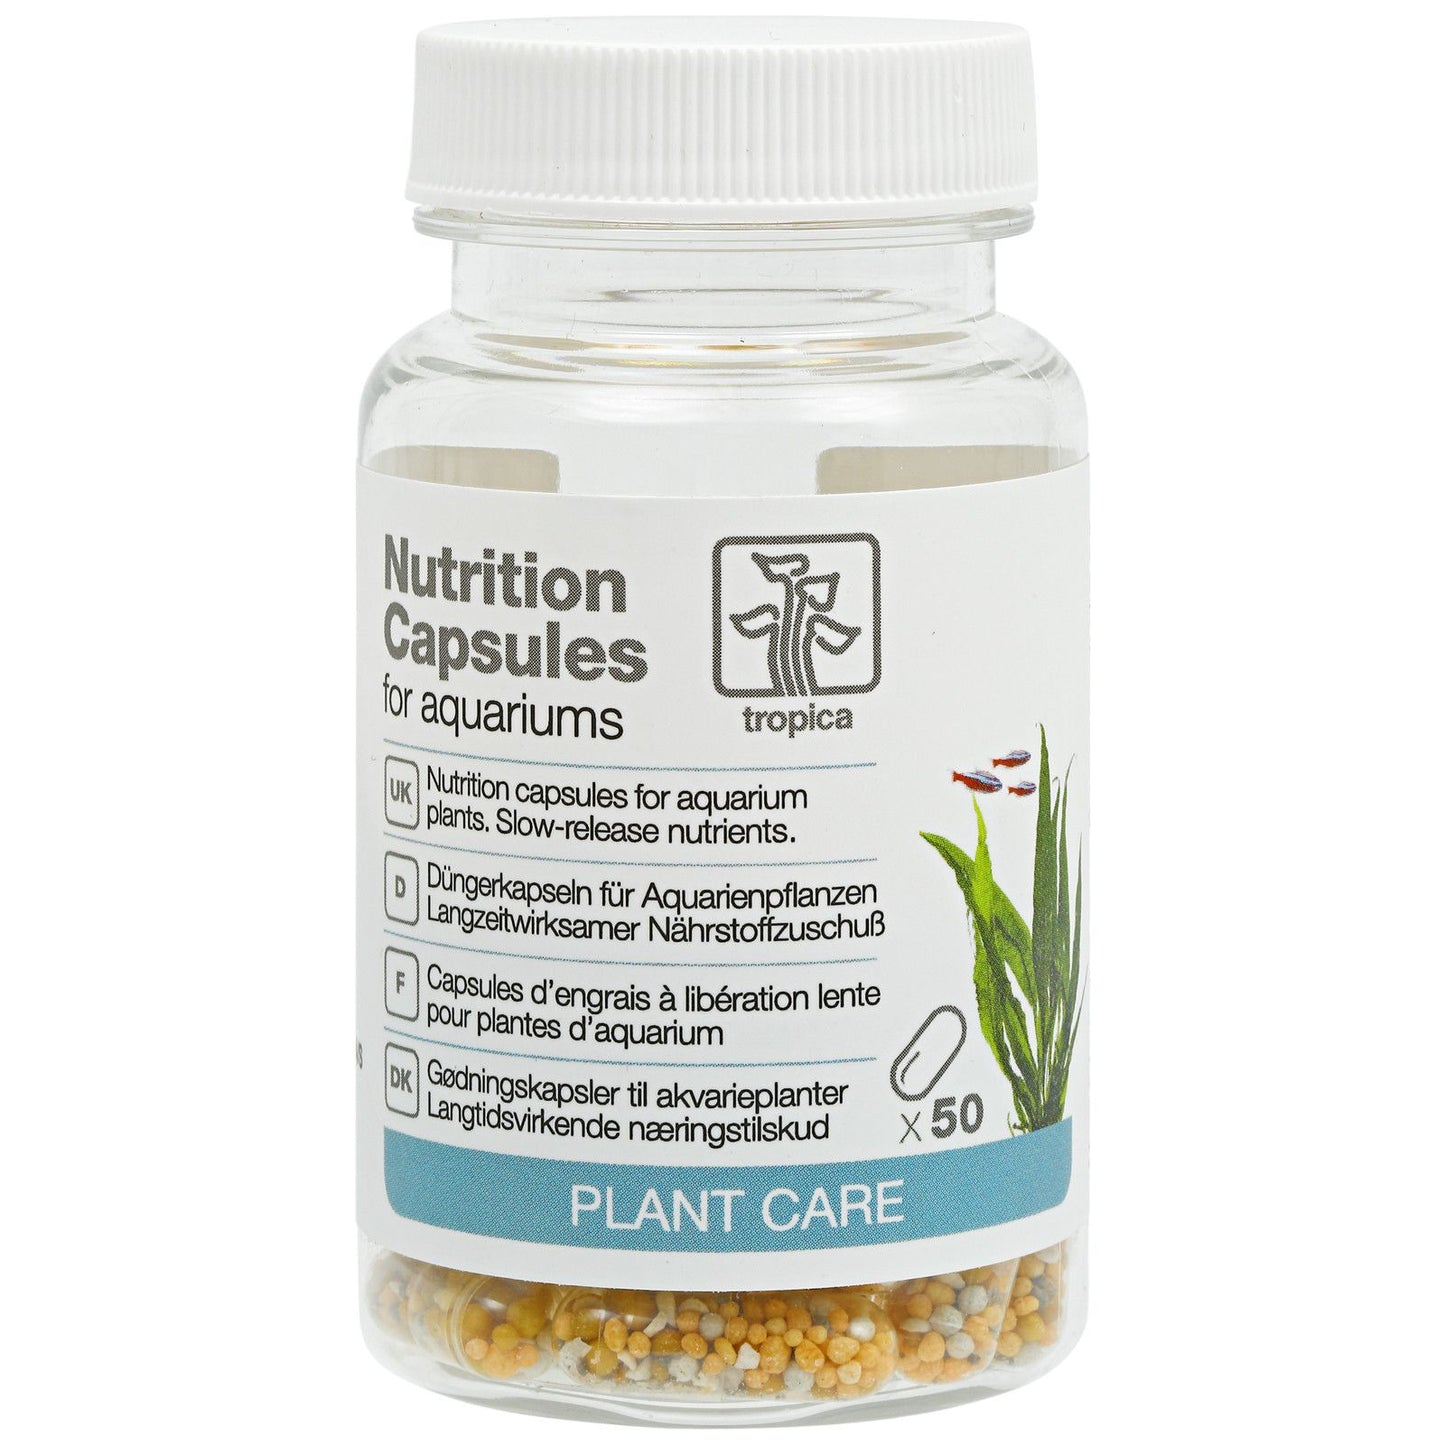 Tropica Nutrition Capsules (50 capsules)